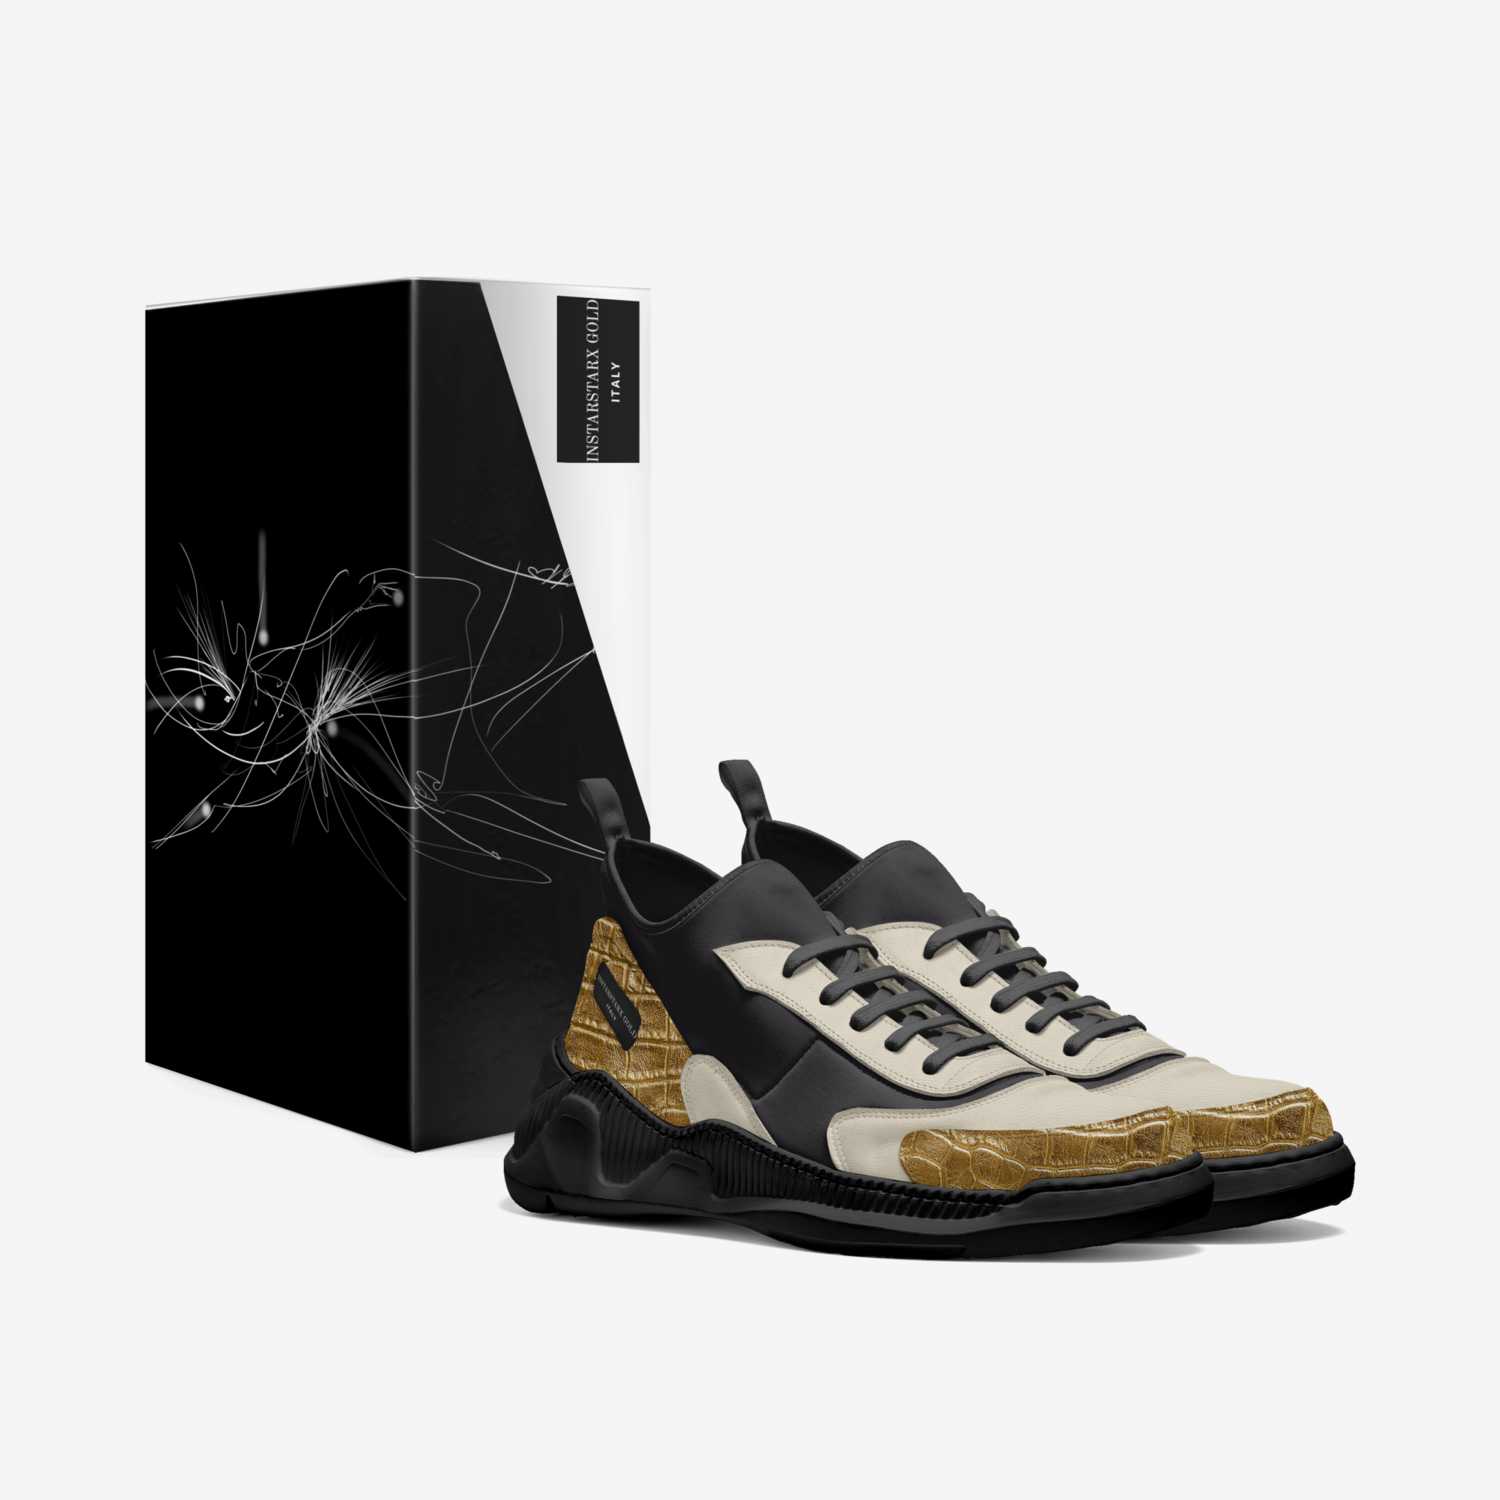 INSTARSTARX GOLD custom made in Italy shoes by Rene Santana | Box view